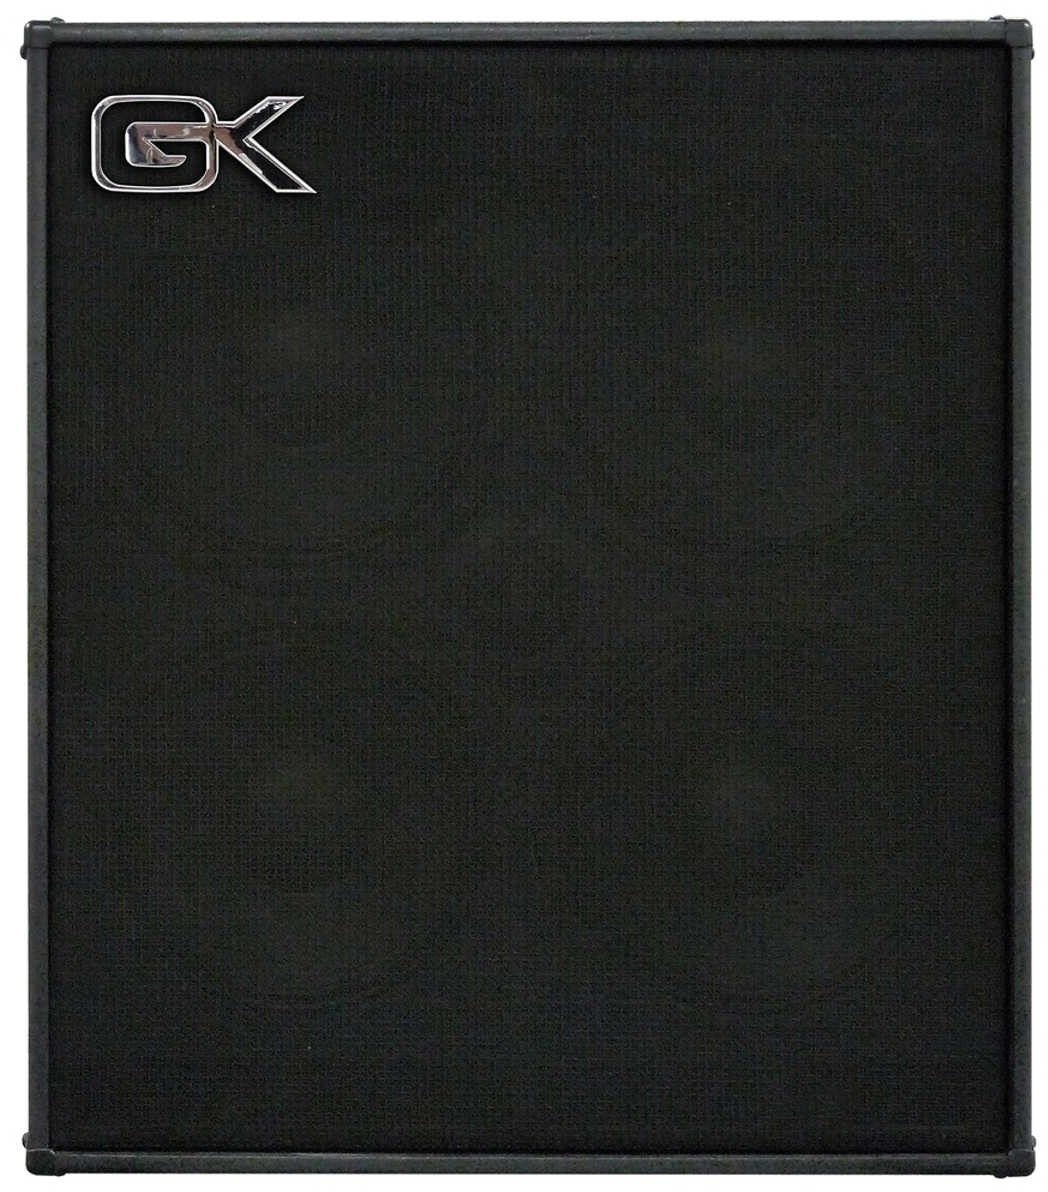 Bassbox Gallien Krueger CX-410 4 Ohm